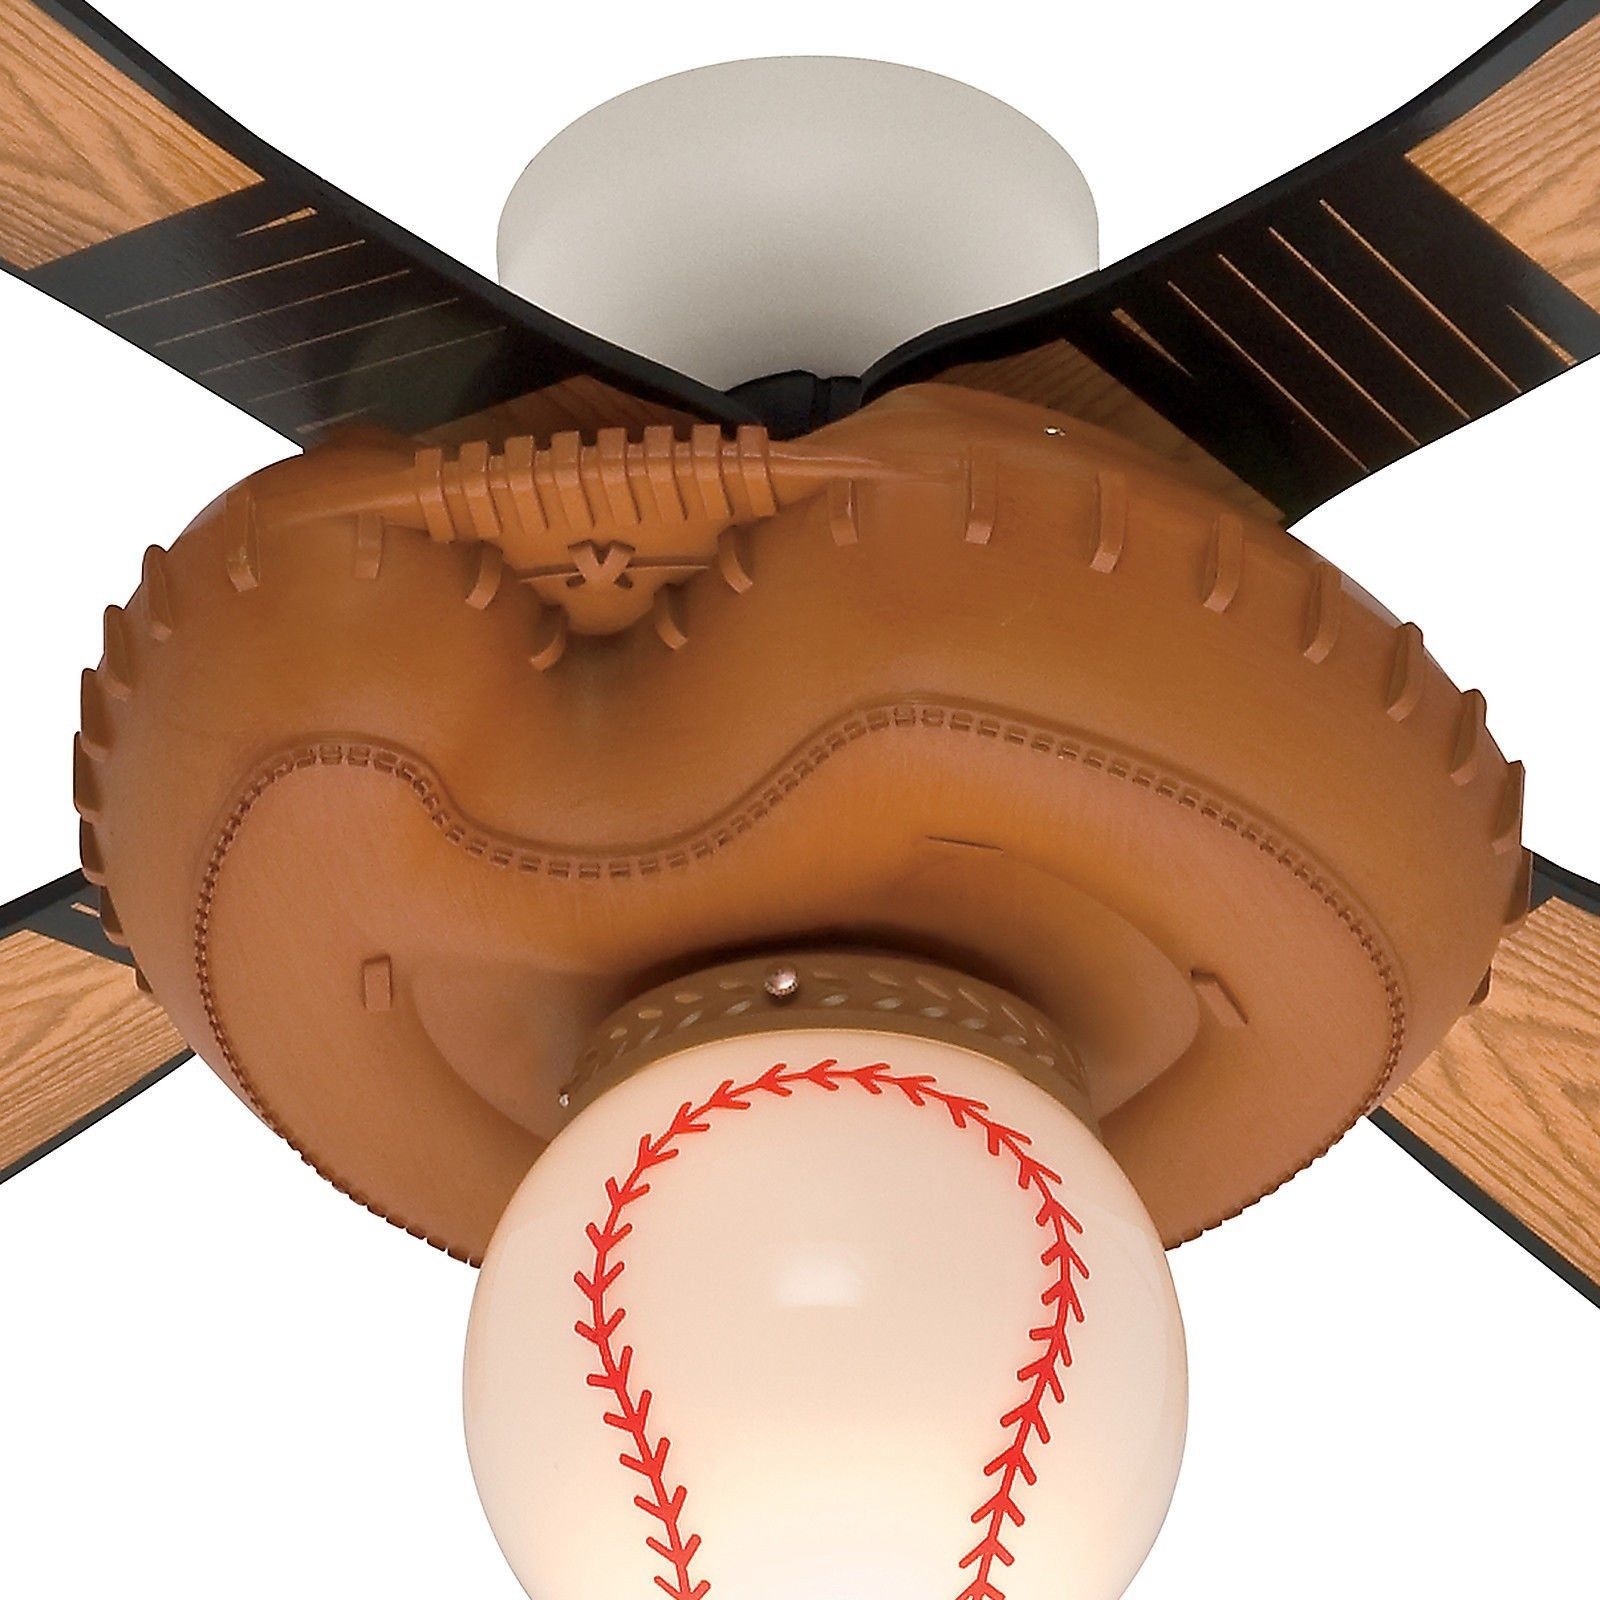 Permalink to Baseball Ceiling Fan Light